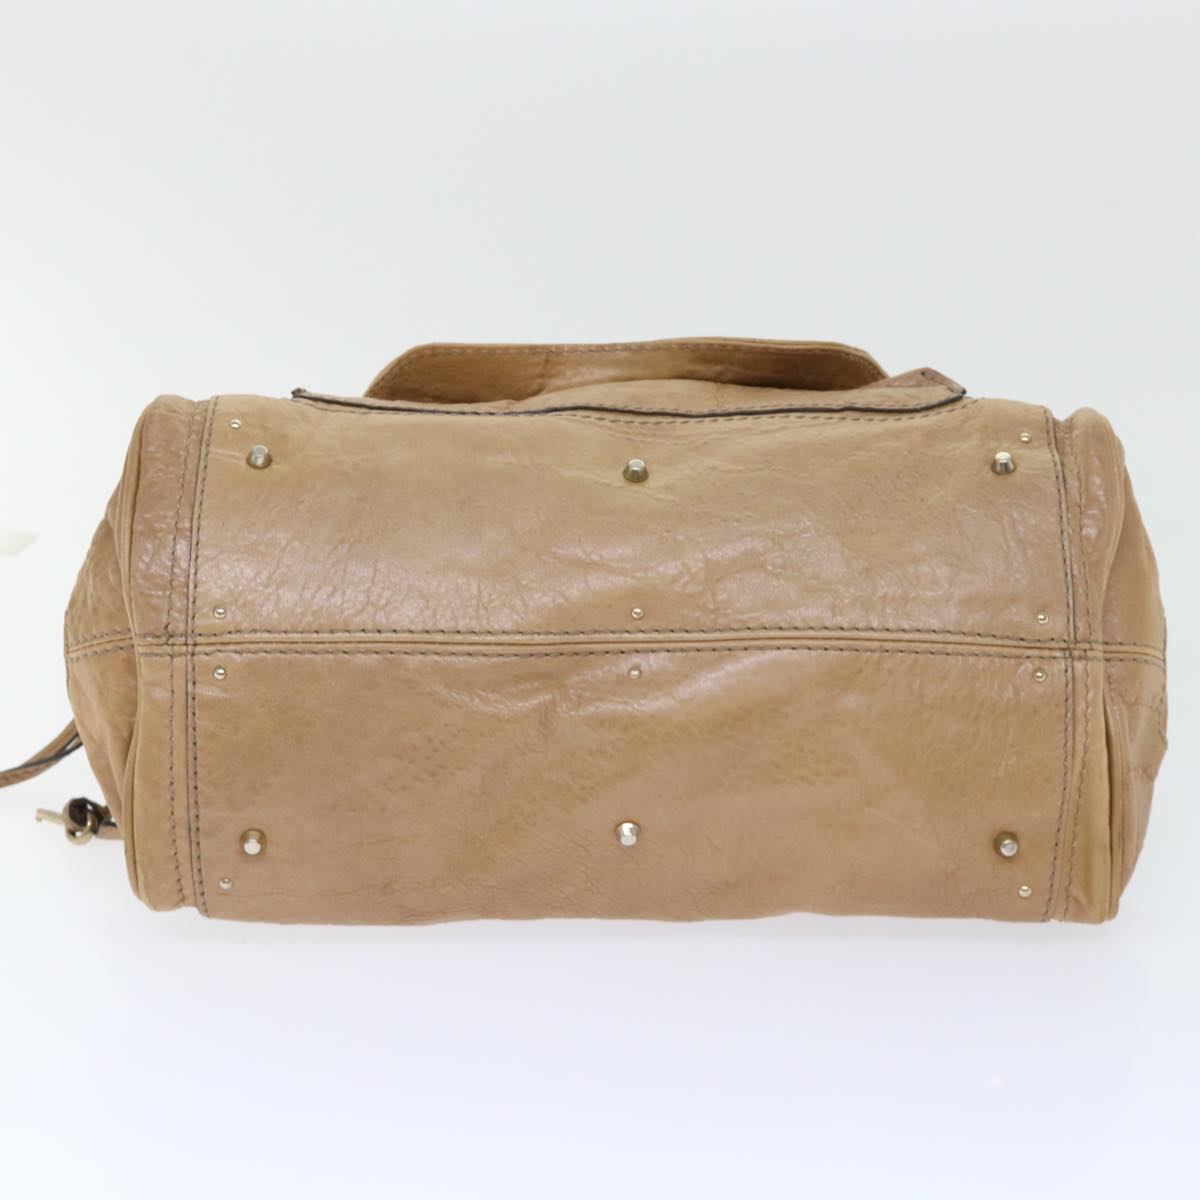 Chloe Paddington Hand Bag Leather Brown 04-07-532 Auth bs7515